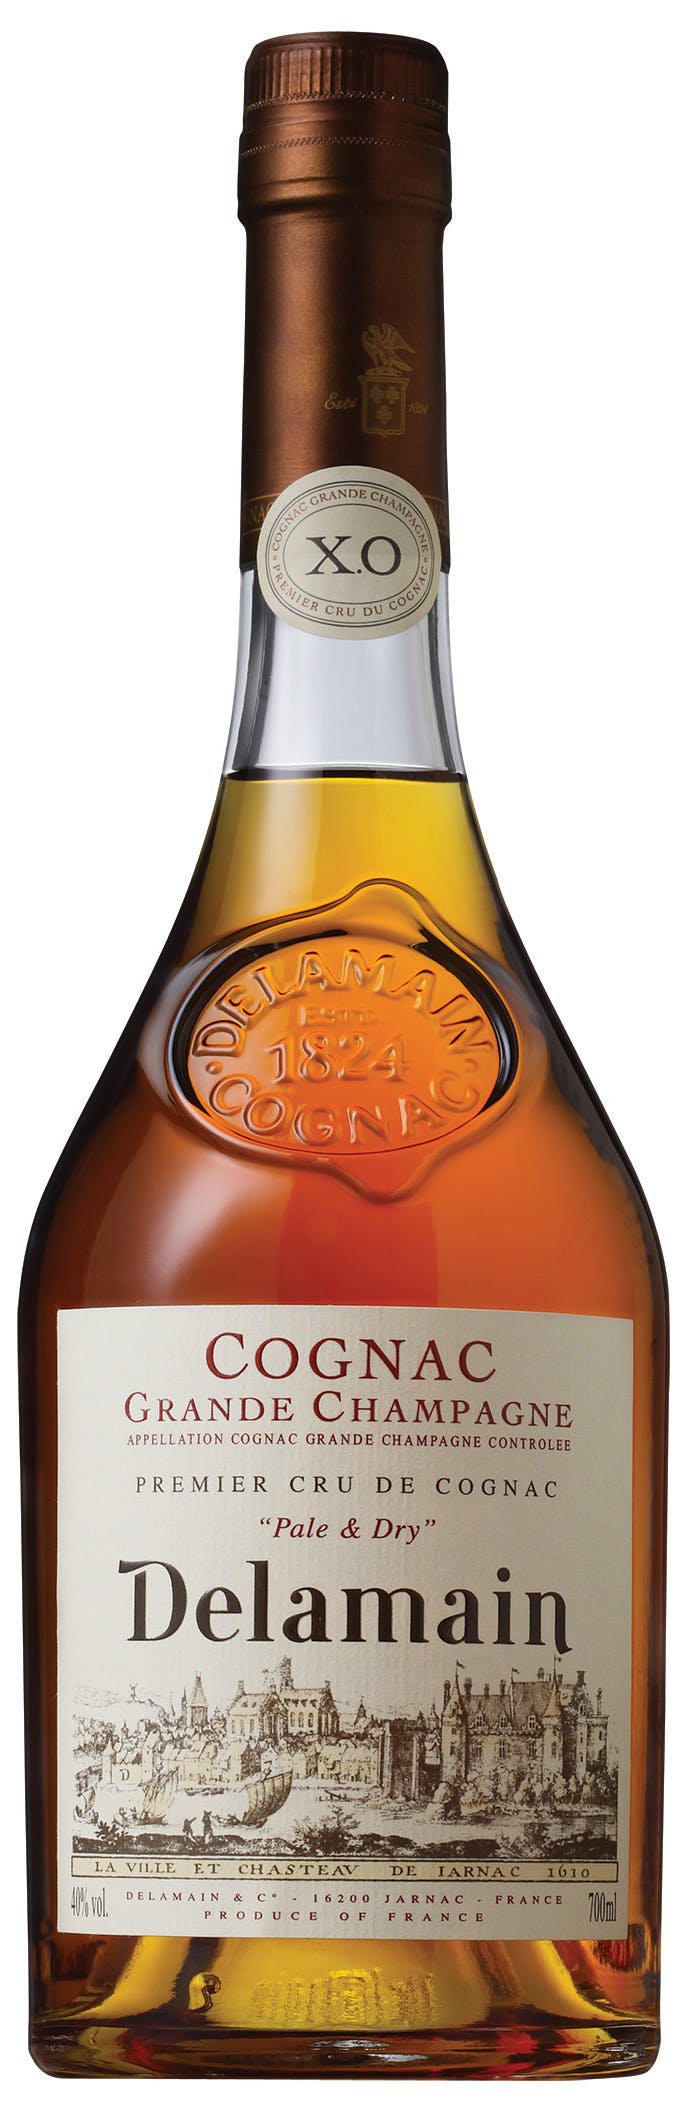 Courvoisier XO Cognac 750ml - The Wine Guy